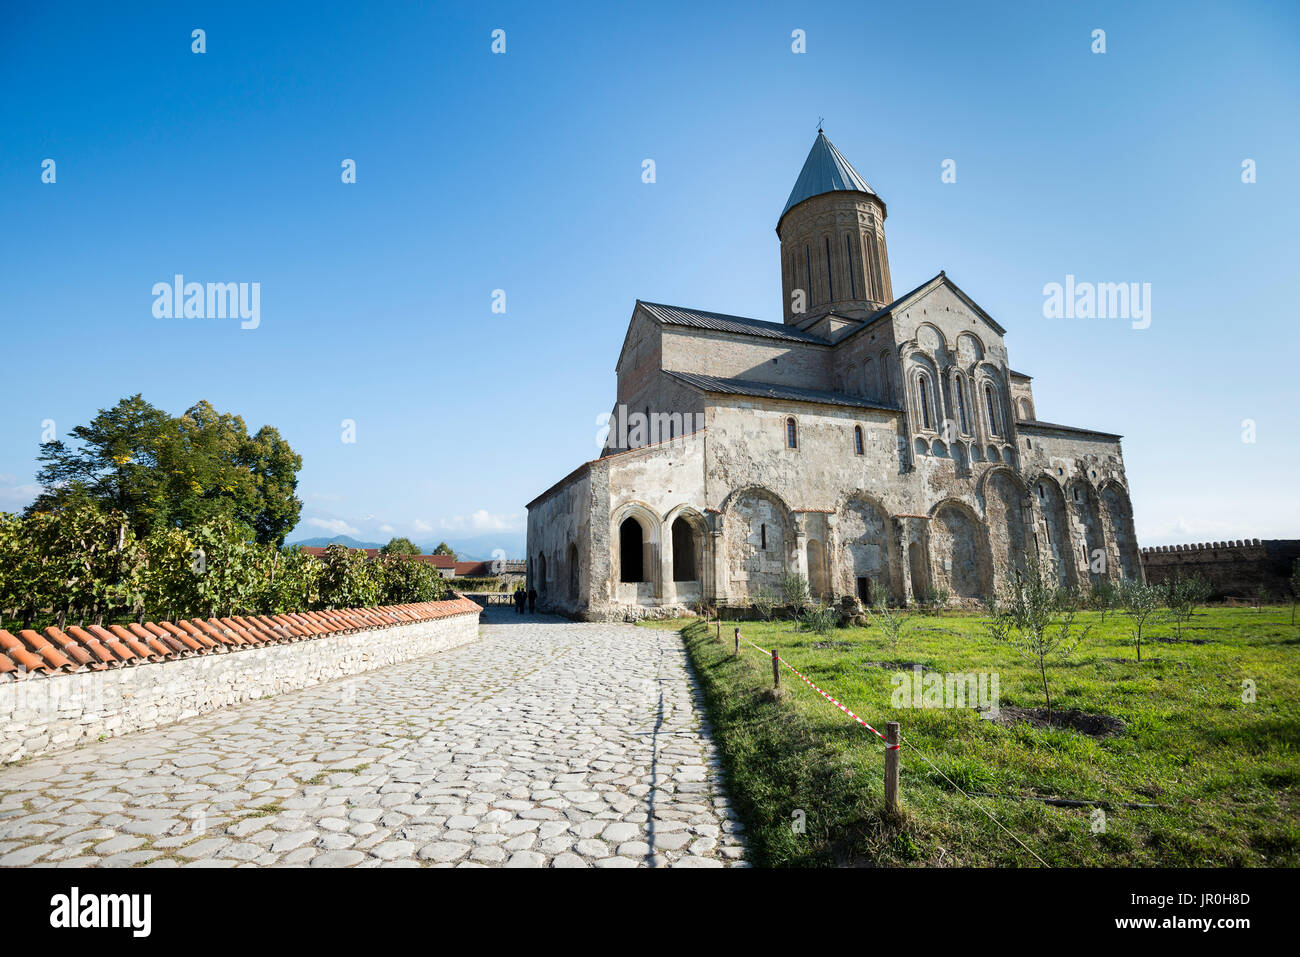 La cattedrale del XI secolo presso il monastero di Alaverdi, Georgiano monastero ortodosso nella regione di Kakheti della Georgia orientale; Kakheti, Georgia Foto Stock